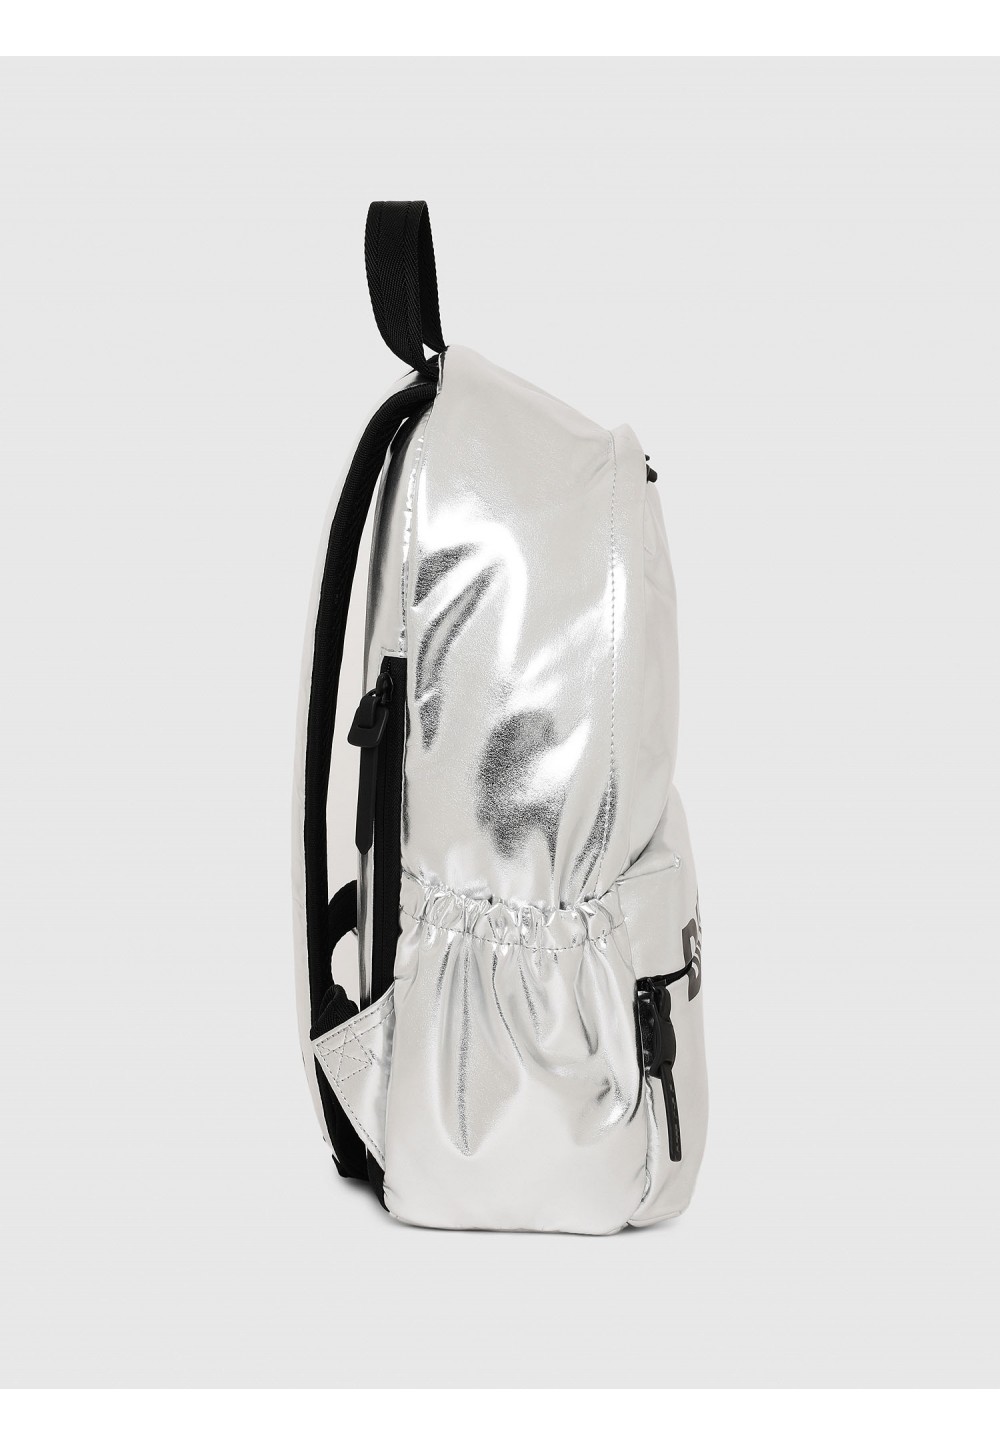  Спортивный металлизированный компактный рюкзак